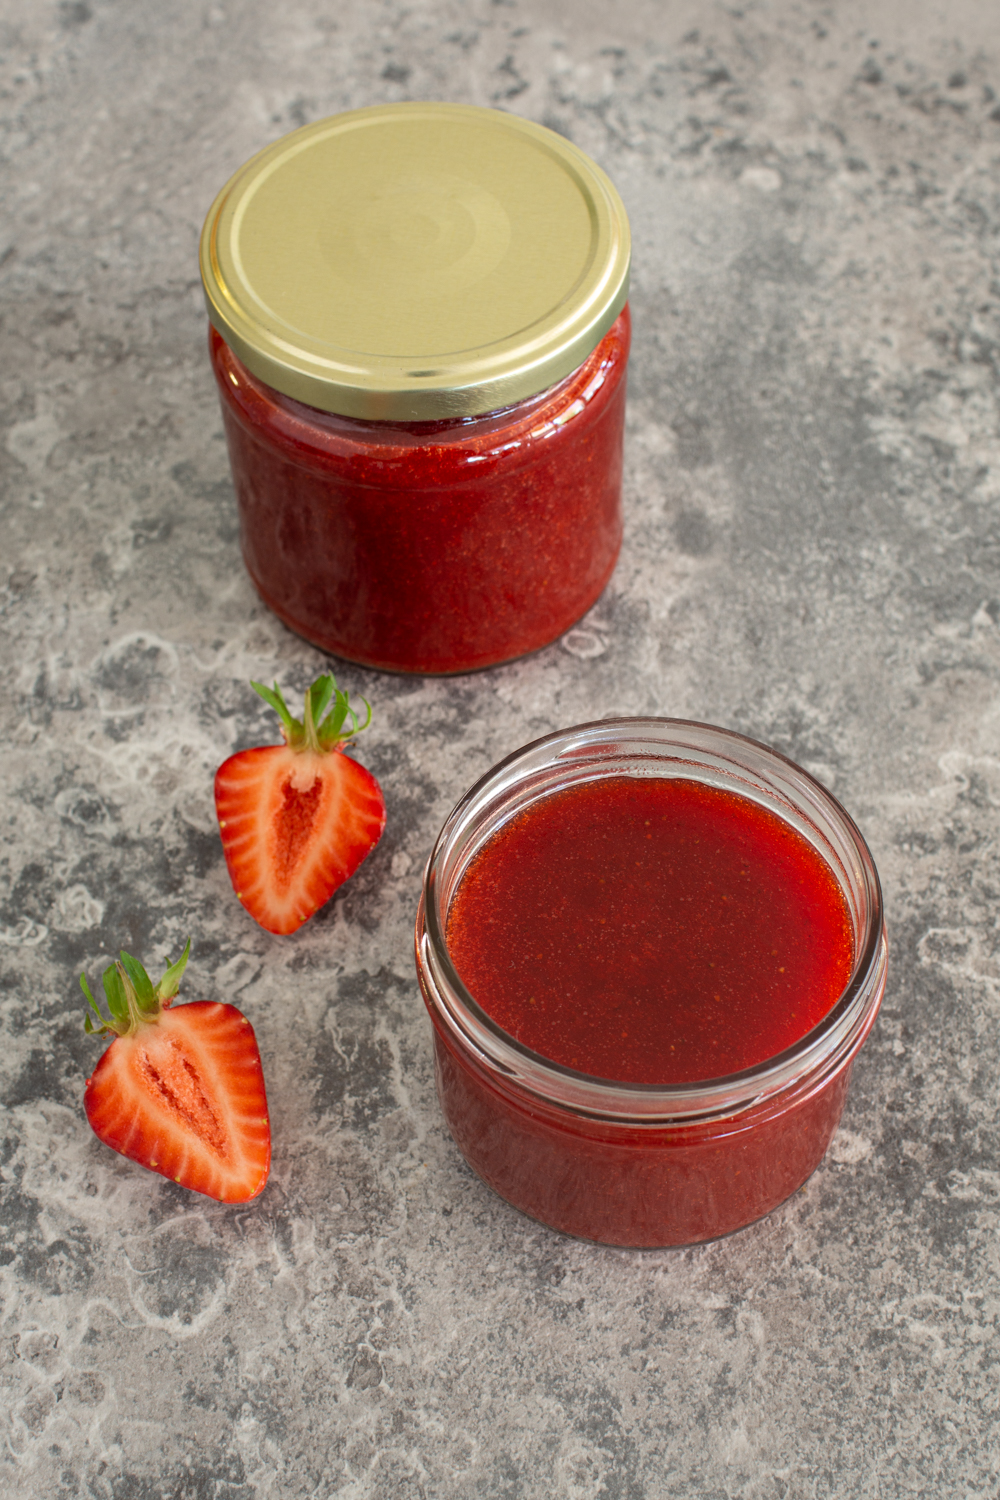 Marmelade einkochen mit Erdbeeren - So geht's!